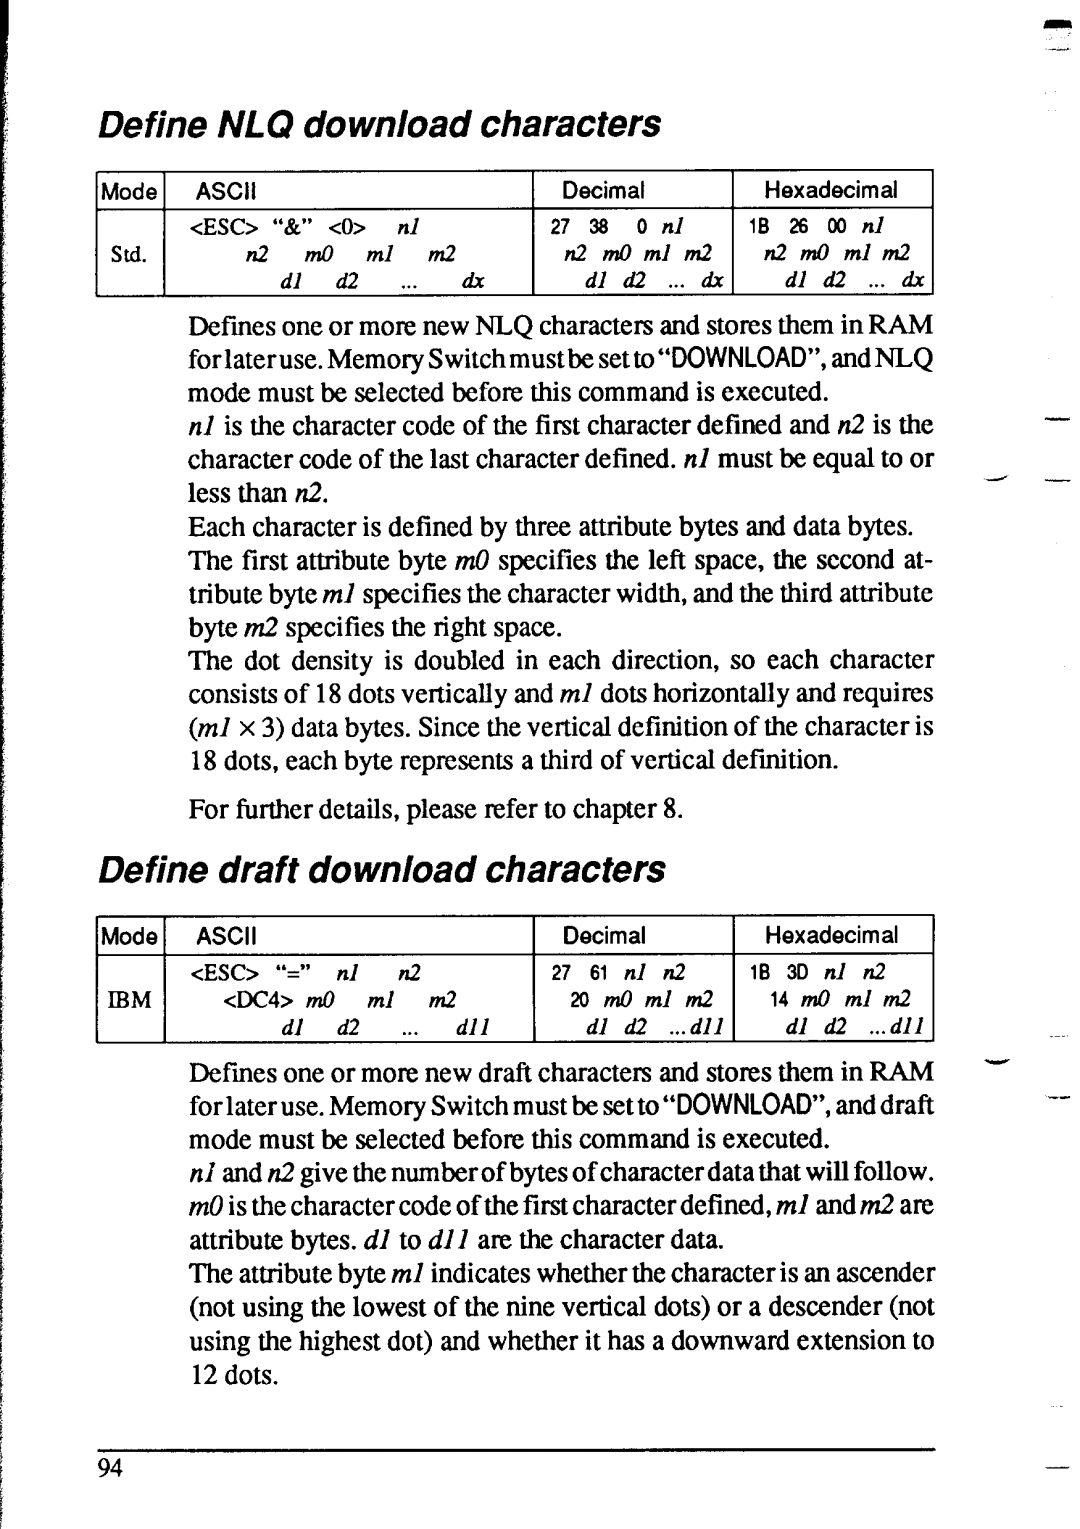 Star Micronics XR-1020, XR-1520 Define NLQ download characters, Define draft download characters, 10 3D, cDC4 m0, 14 m0 